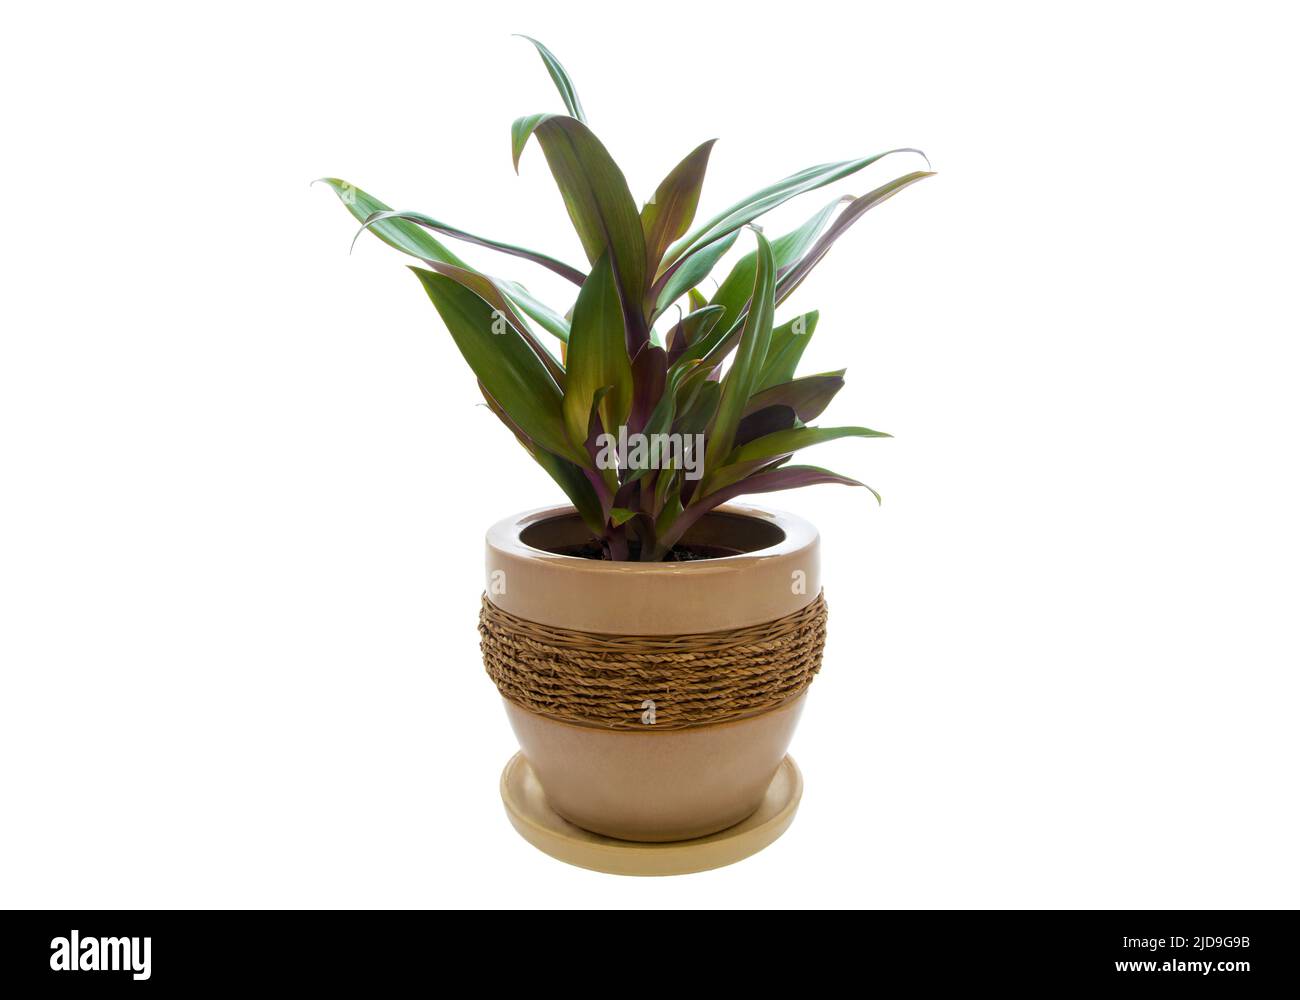 Image de la plante maison Rhoeo décolorée dans pot isolé sur fond blanc Banque D'Images